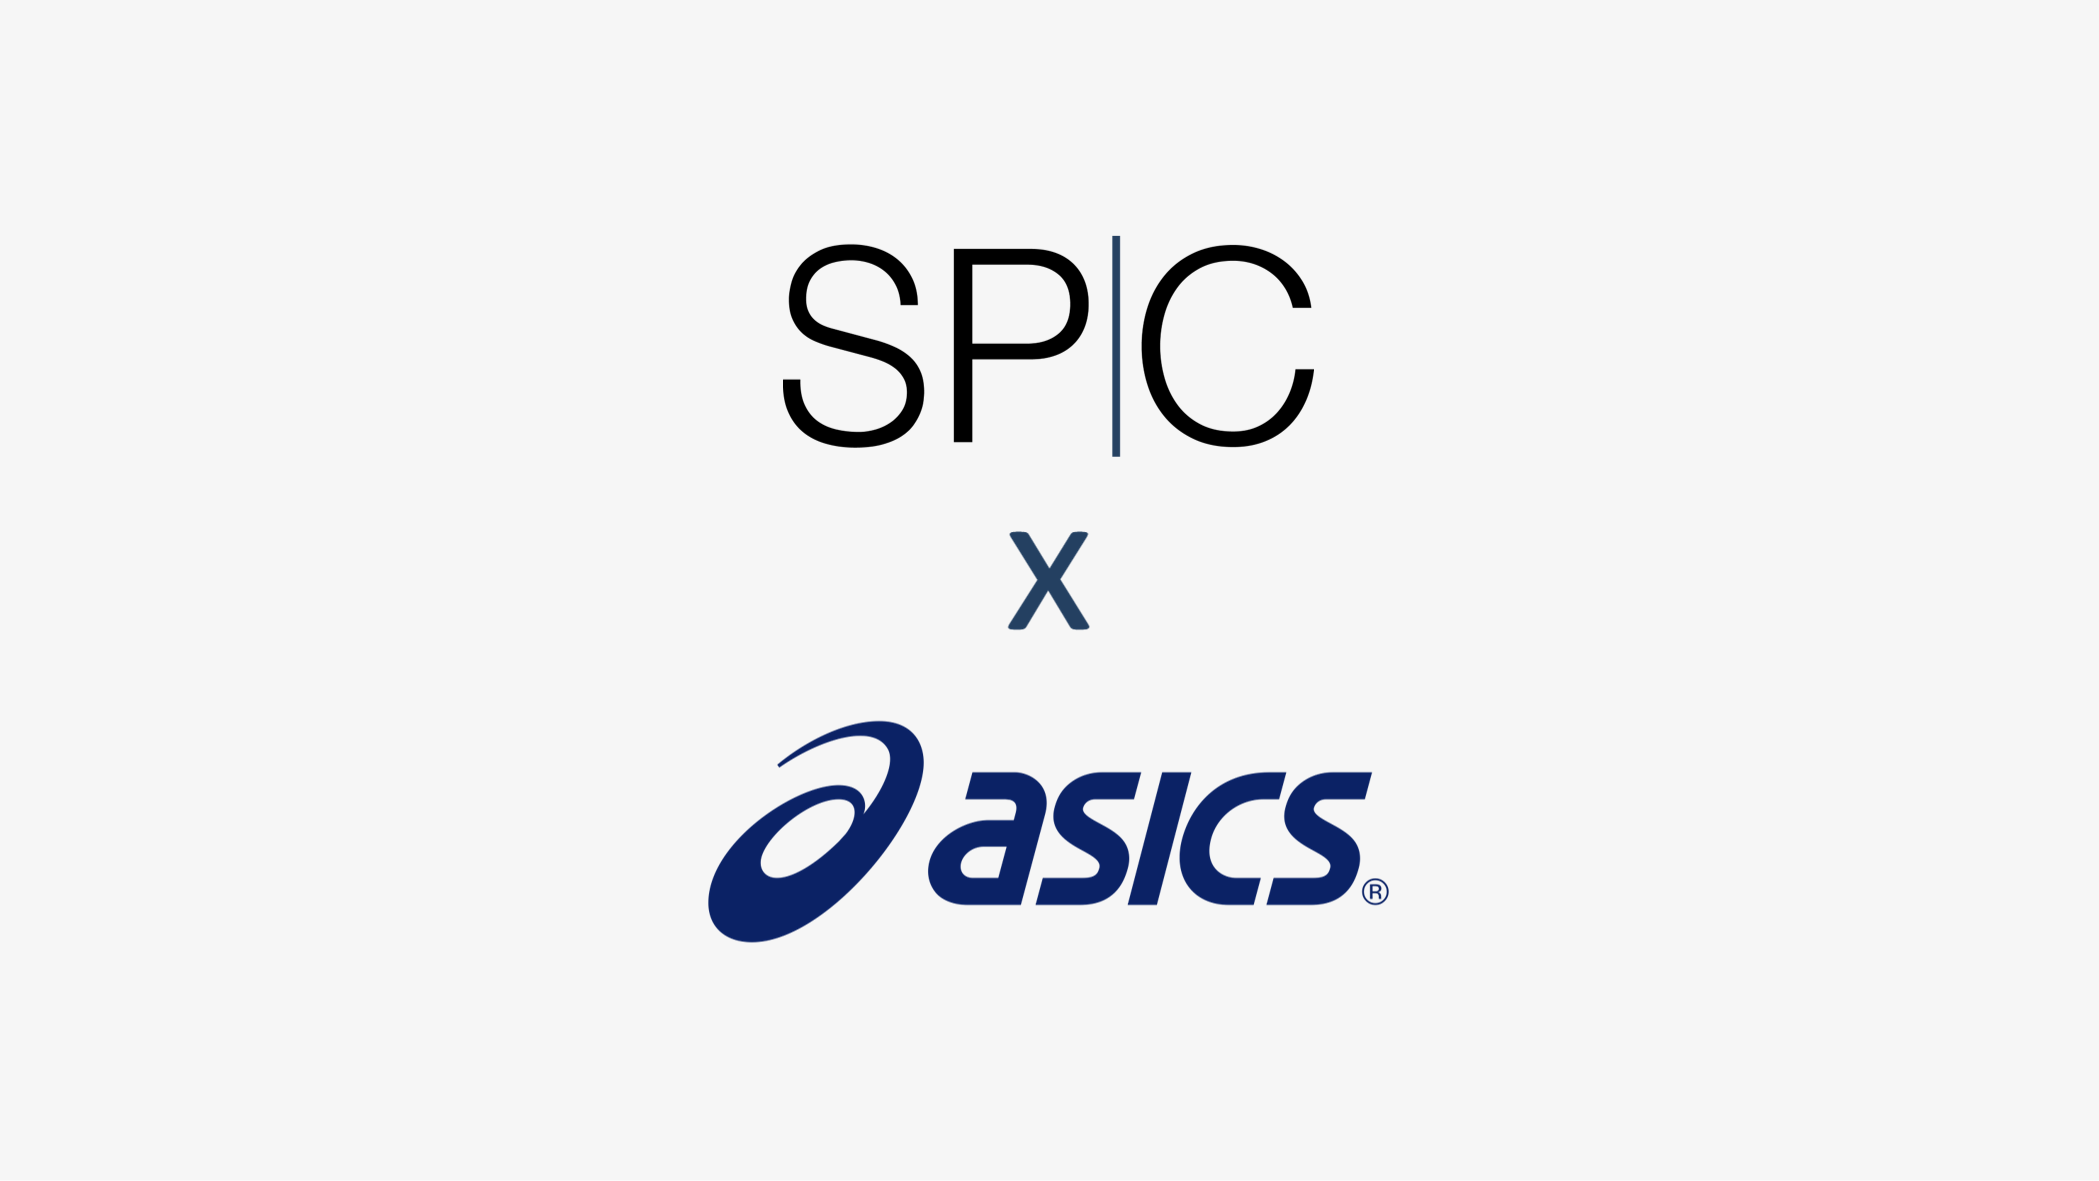 ASICSxSPC